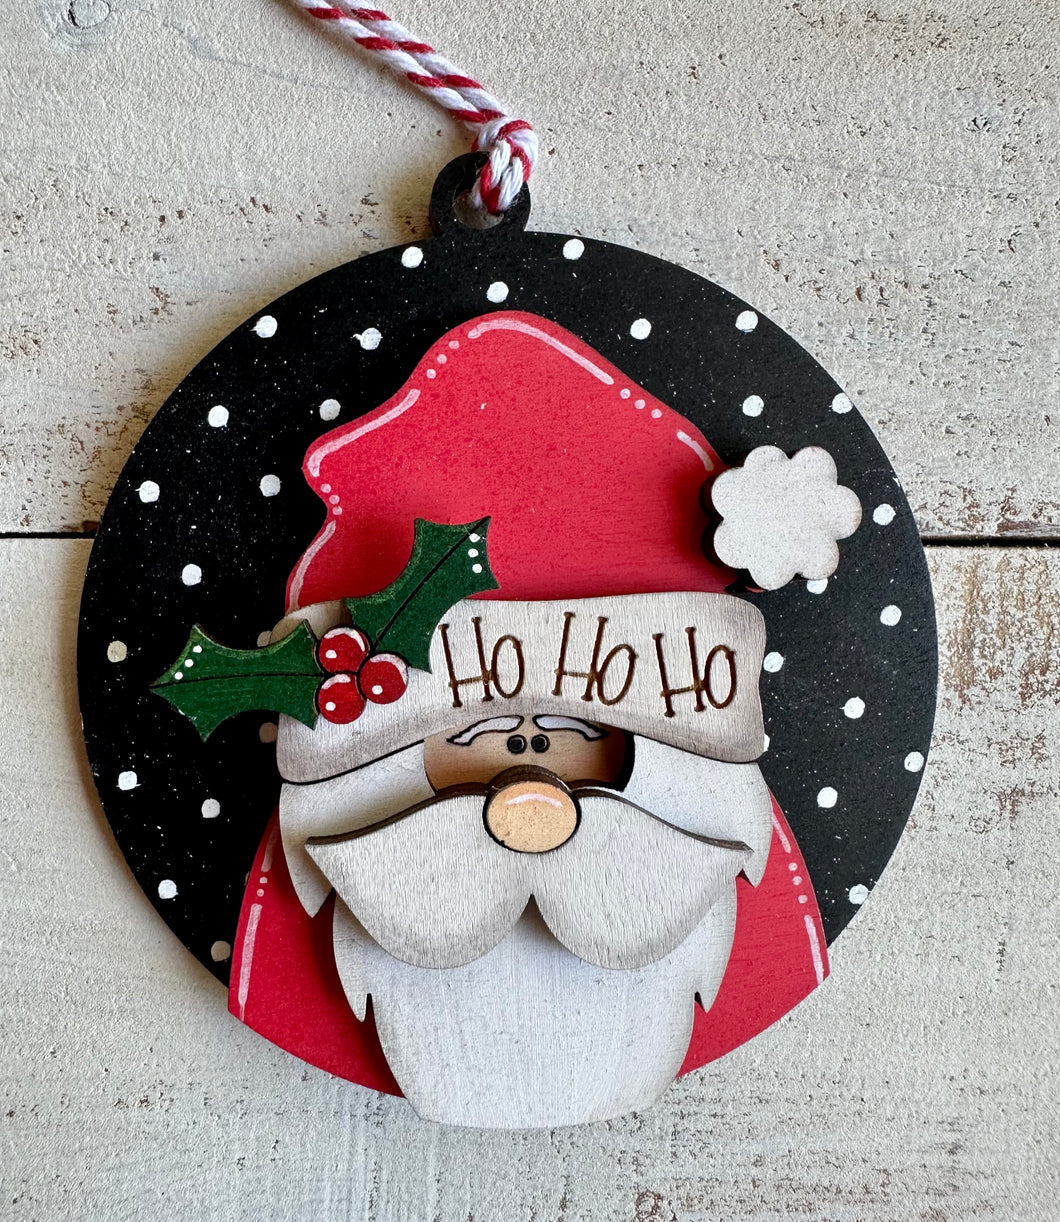 Ho Ho HO Santa Ornament - DIY